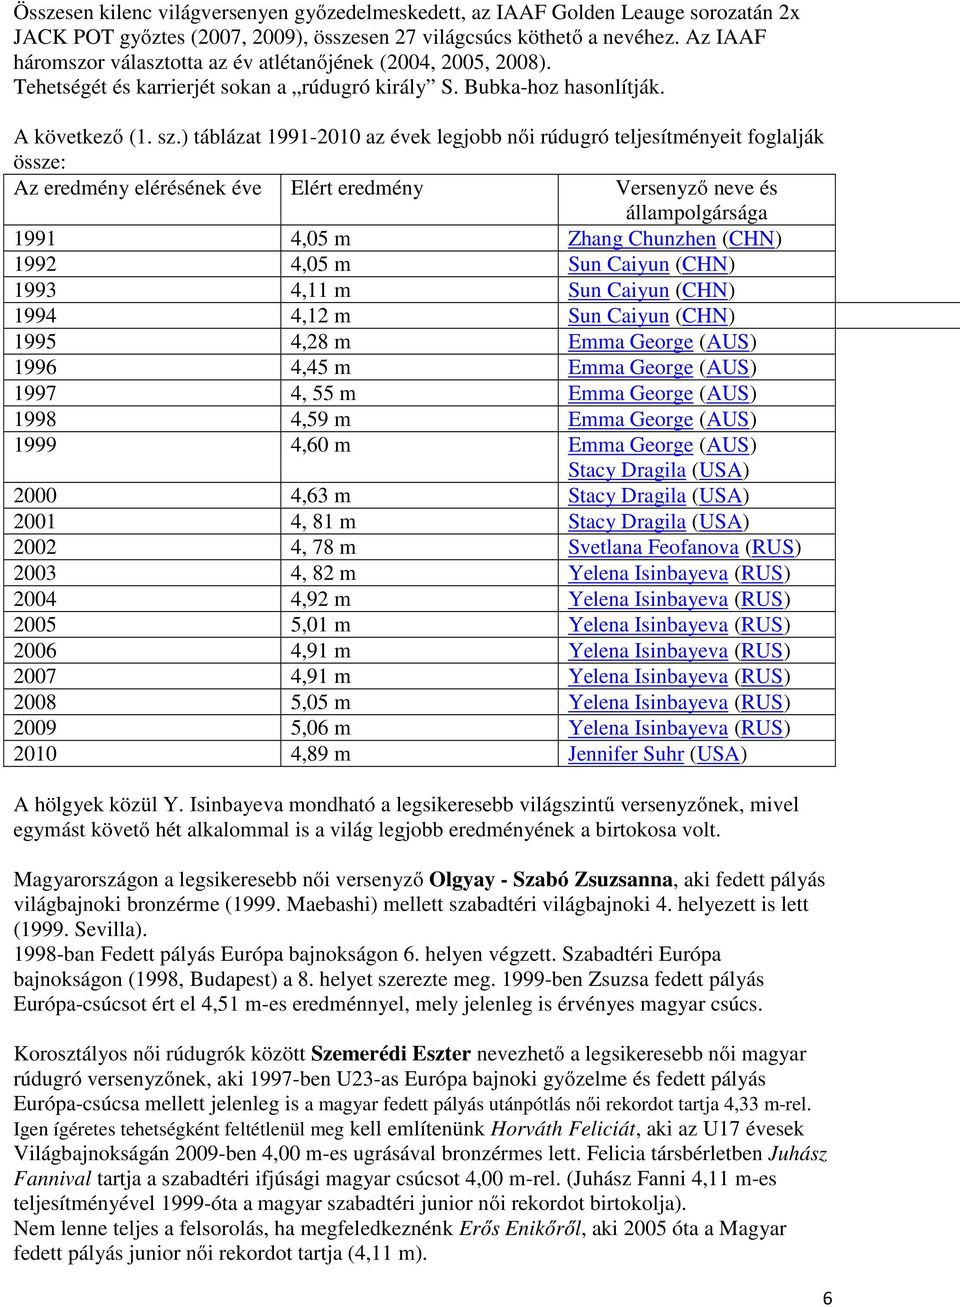 ) táblázat 1991-2010 az évek legjobb női rúdugró teljesítményeit foglalják össze: Az eredmény elérésének éve Elért eredmény Versenyző neve és állampolgársága 1991 4,05 m Zhang Chunzhen (CHN) 1992